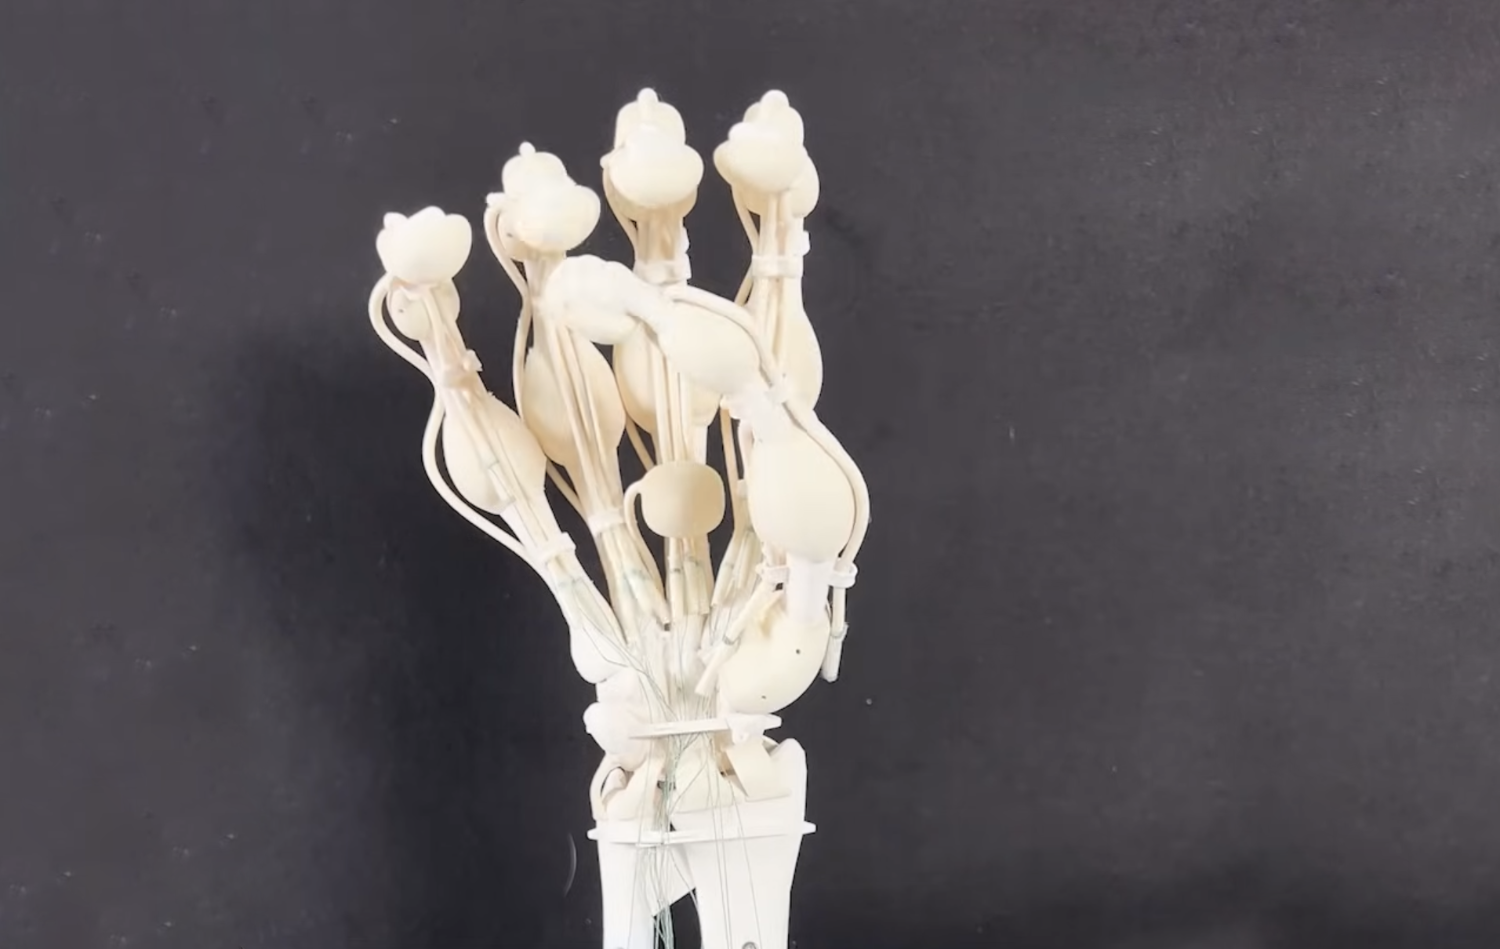 Робо-руку «совсем как у человека» напечатали на 3D-принтере